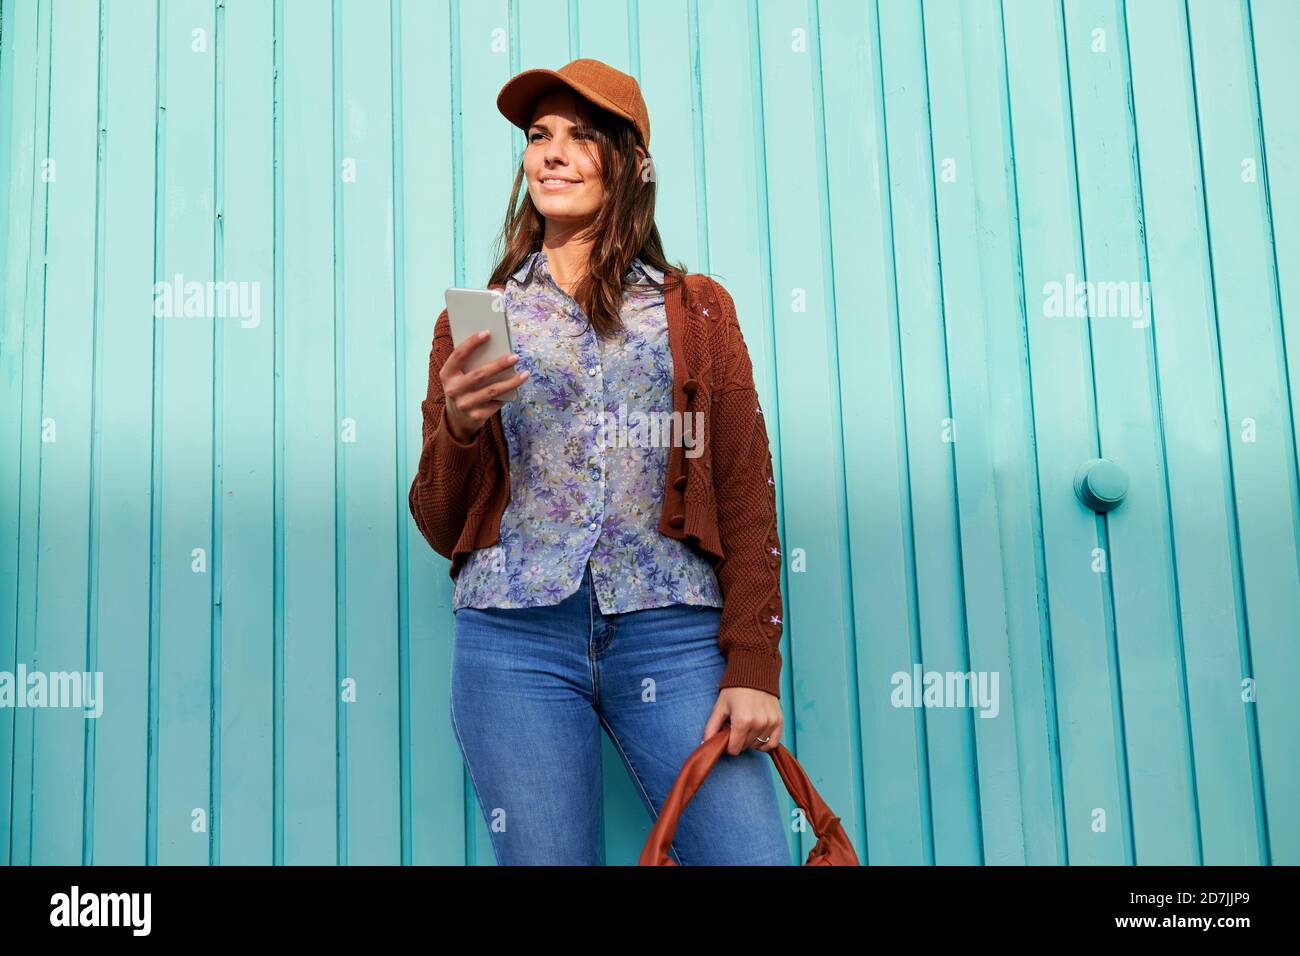 Junge Frau mit Handy, während sie gegen blaues Metall stehen Tür Stockfoto